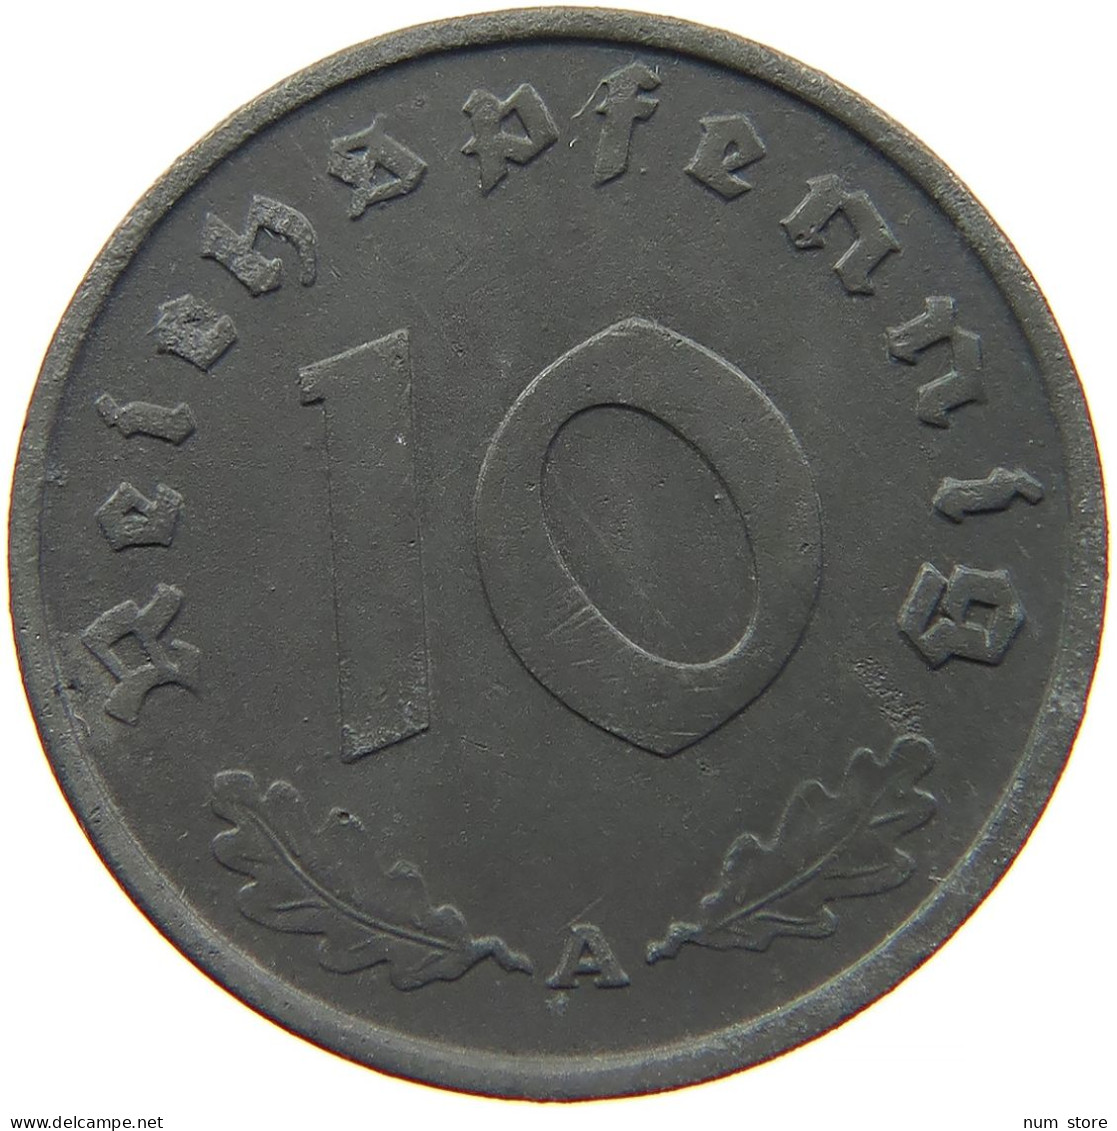 GERMANY 10 REICHSPFENNIG 1942 A #s095 0001 - 10 Reichspfennig